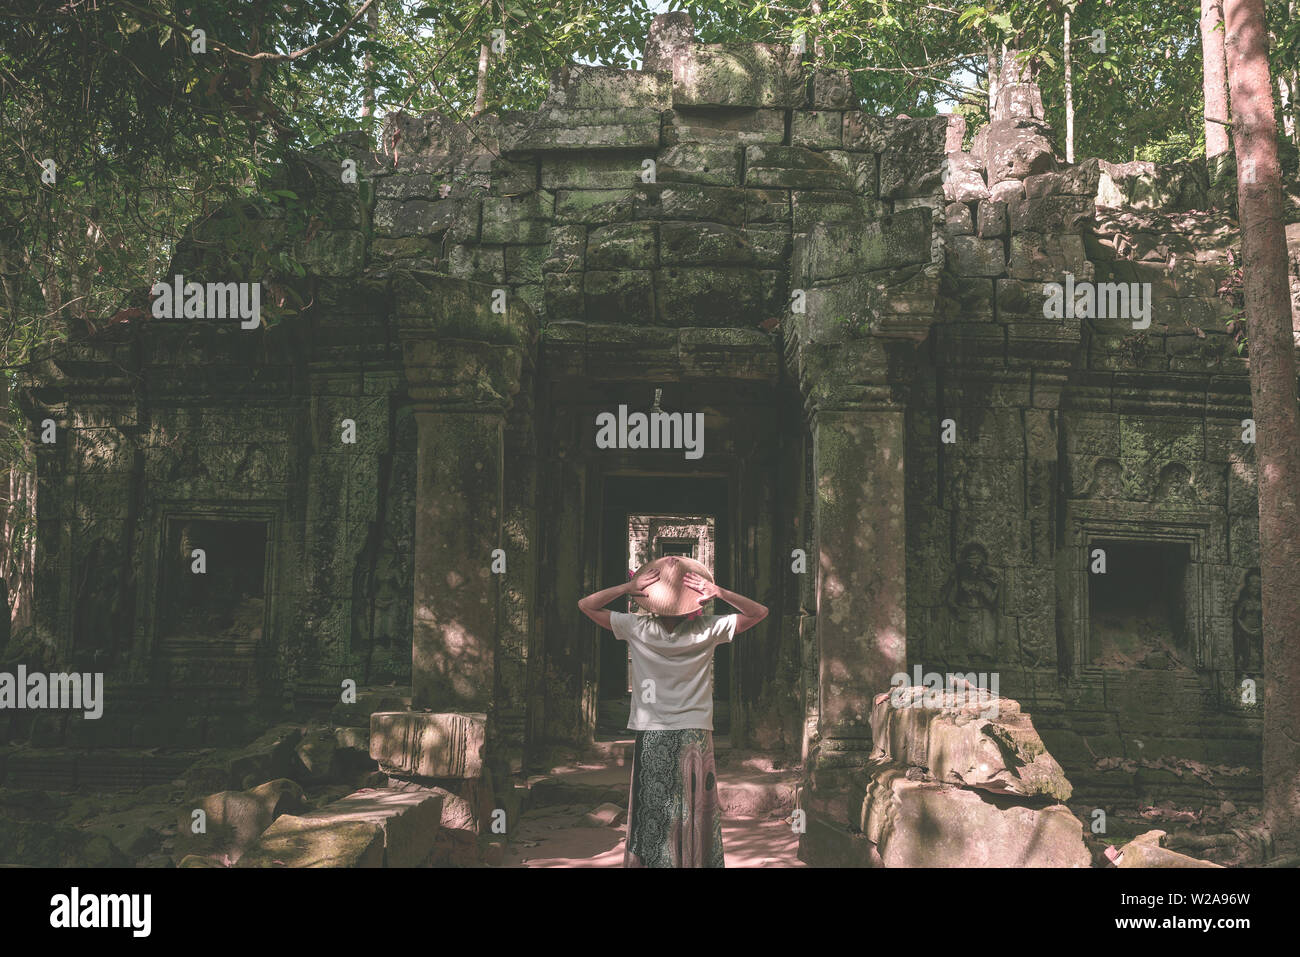 Eine touristische besuchen Angkor Ruinen inmitten Dschungel, Tempelanlage Angkor Wat, Reiseziel Kambodscha. Frau mit traditionellen Hut, Ansicht von hinten. Stockfoto